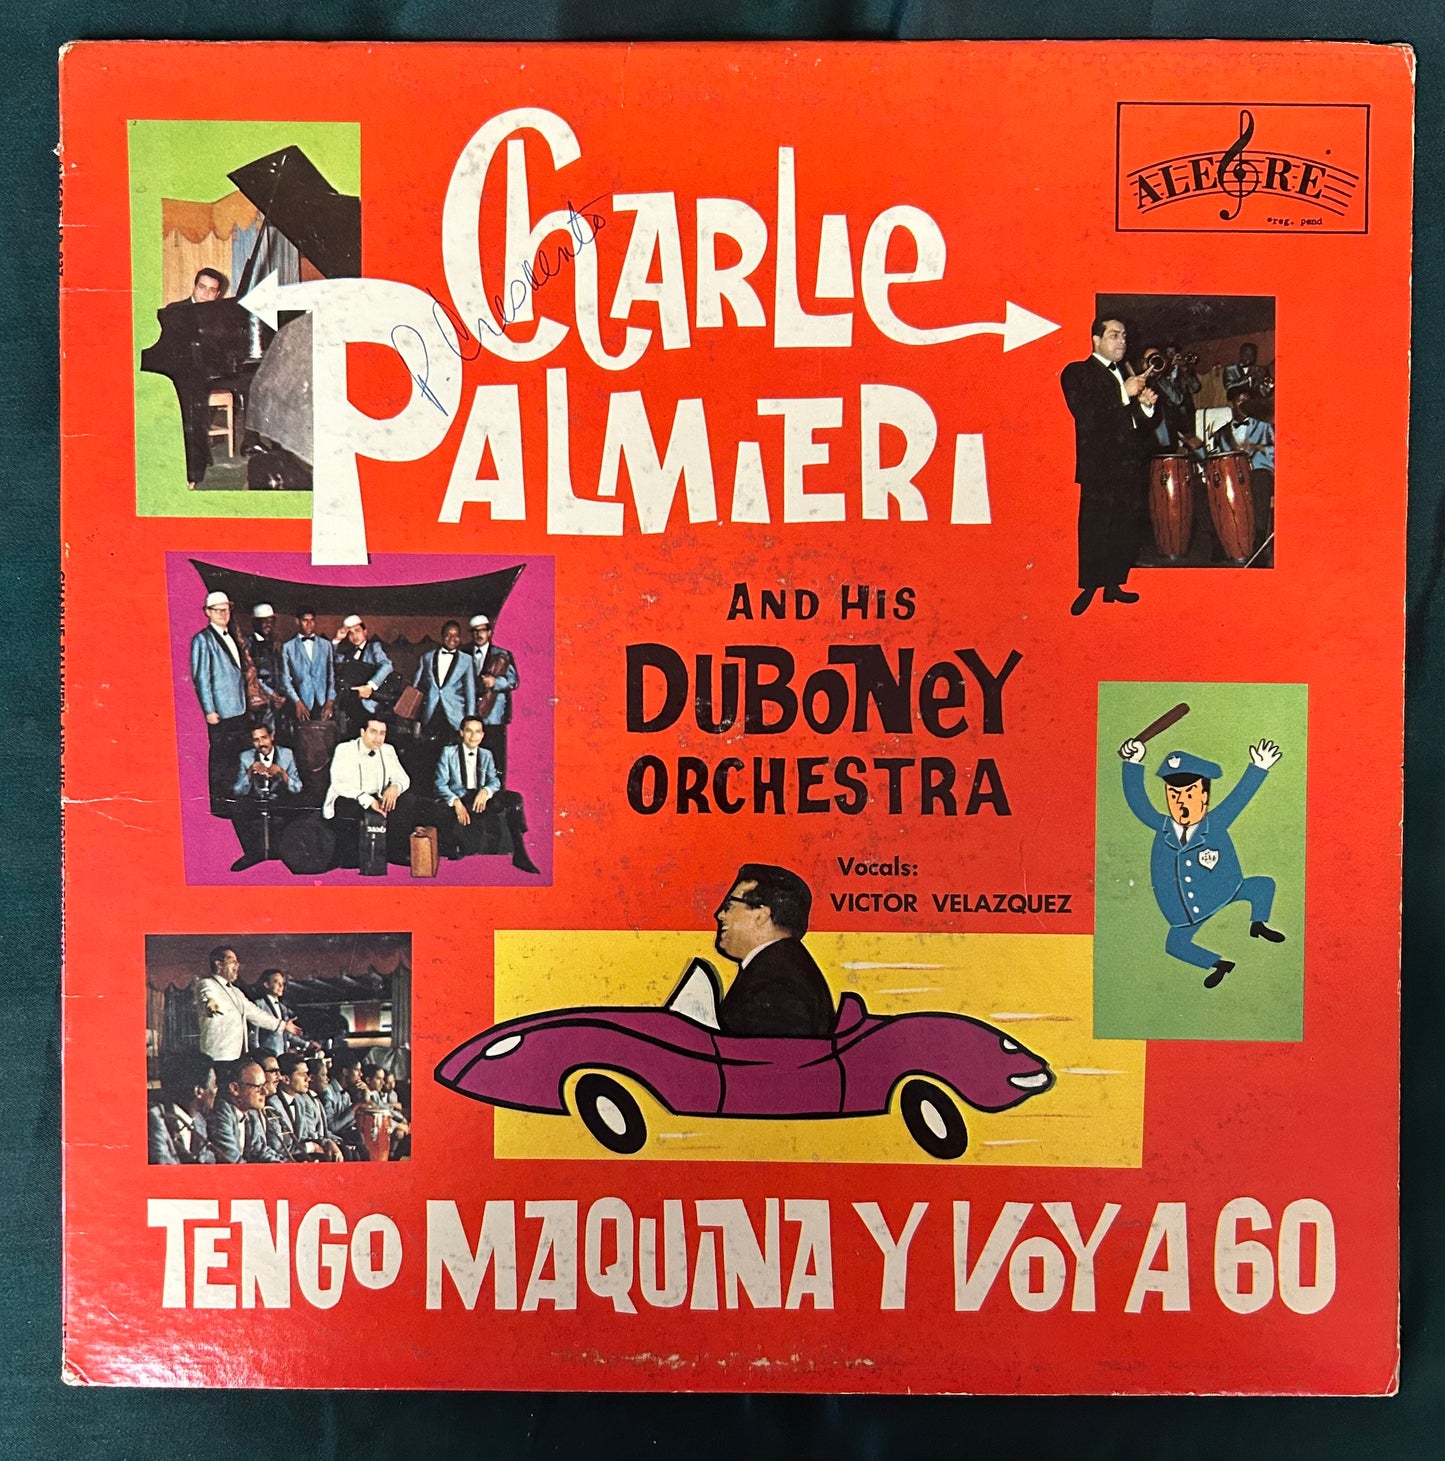 Charlie Palmieri - Tengo Maquina Y Voy A 60 1st Press 1965 Alegre Salsa